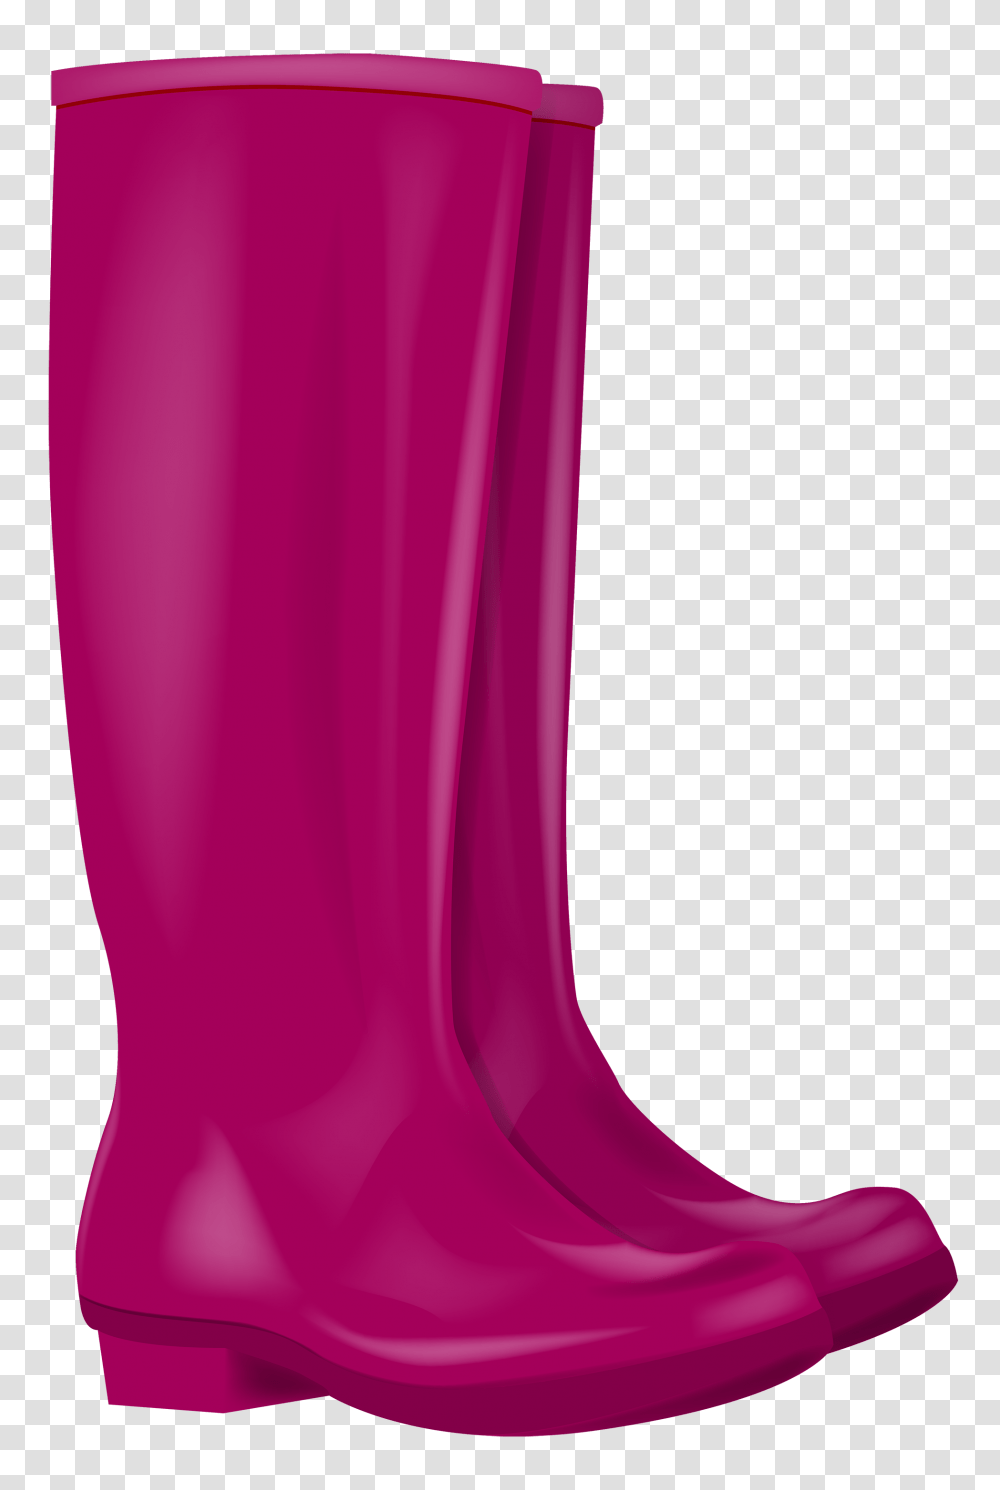 Pink Rubber Boots Clipart Image, Apparel, Purple, Cape Transparent Png